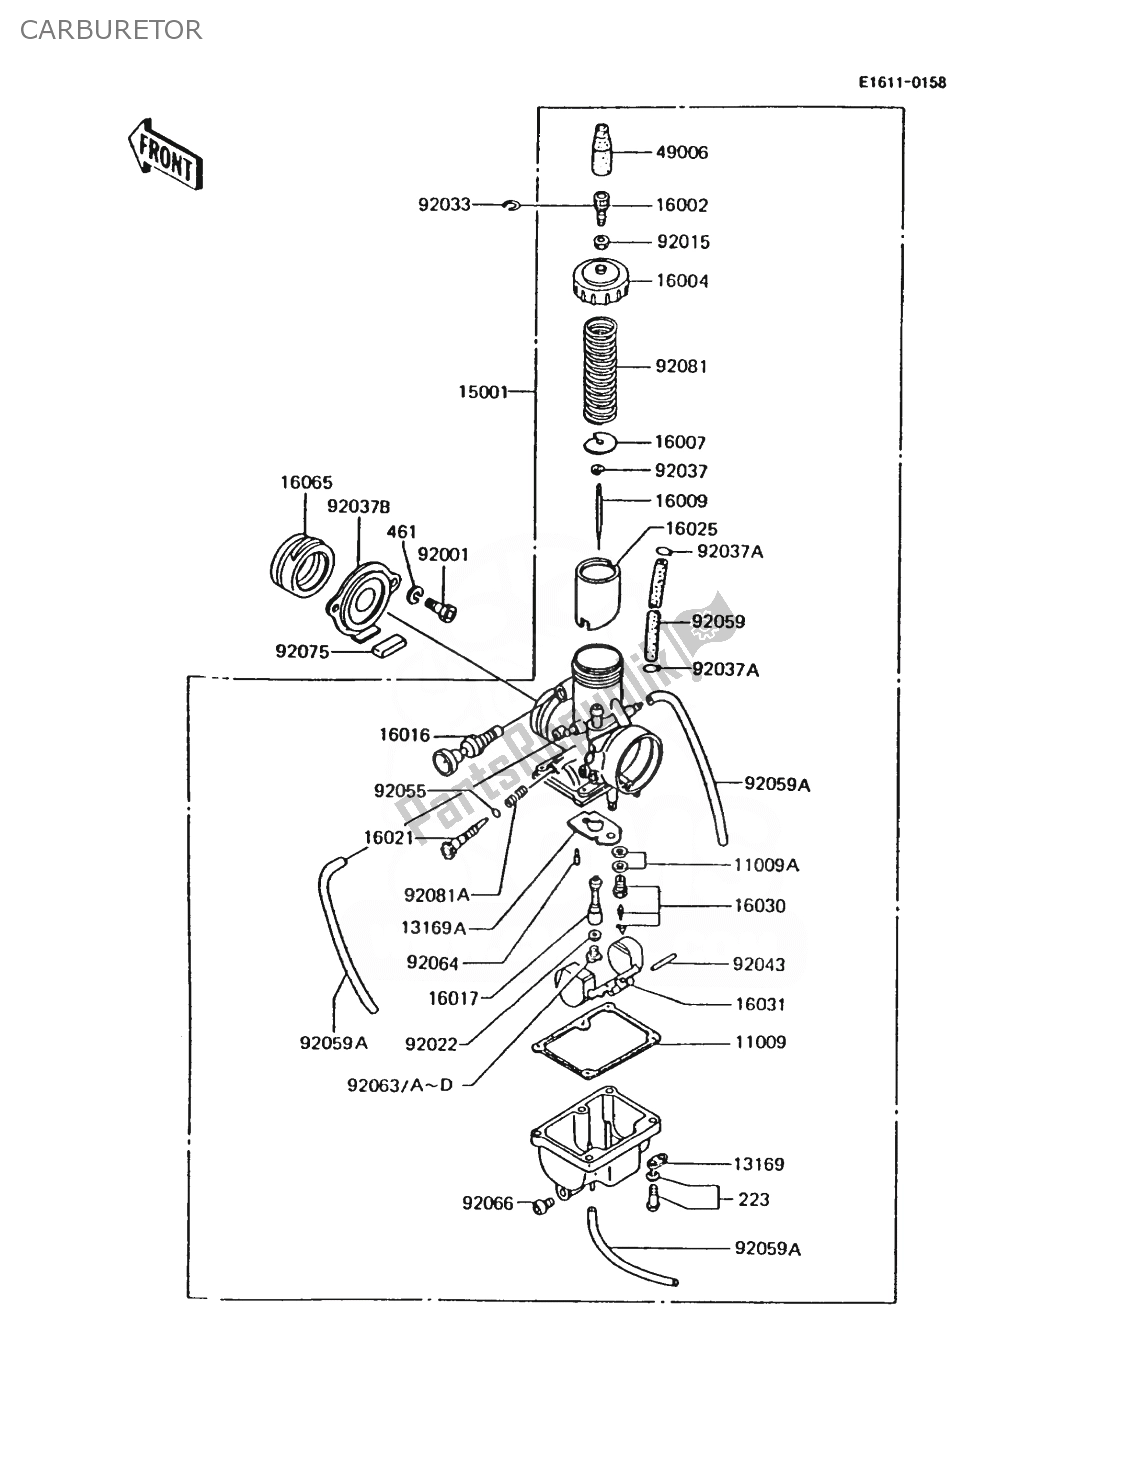 Alle onderdelen voor de Carburator van de Kawasaki AR 125 1988